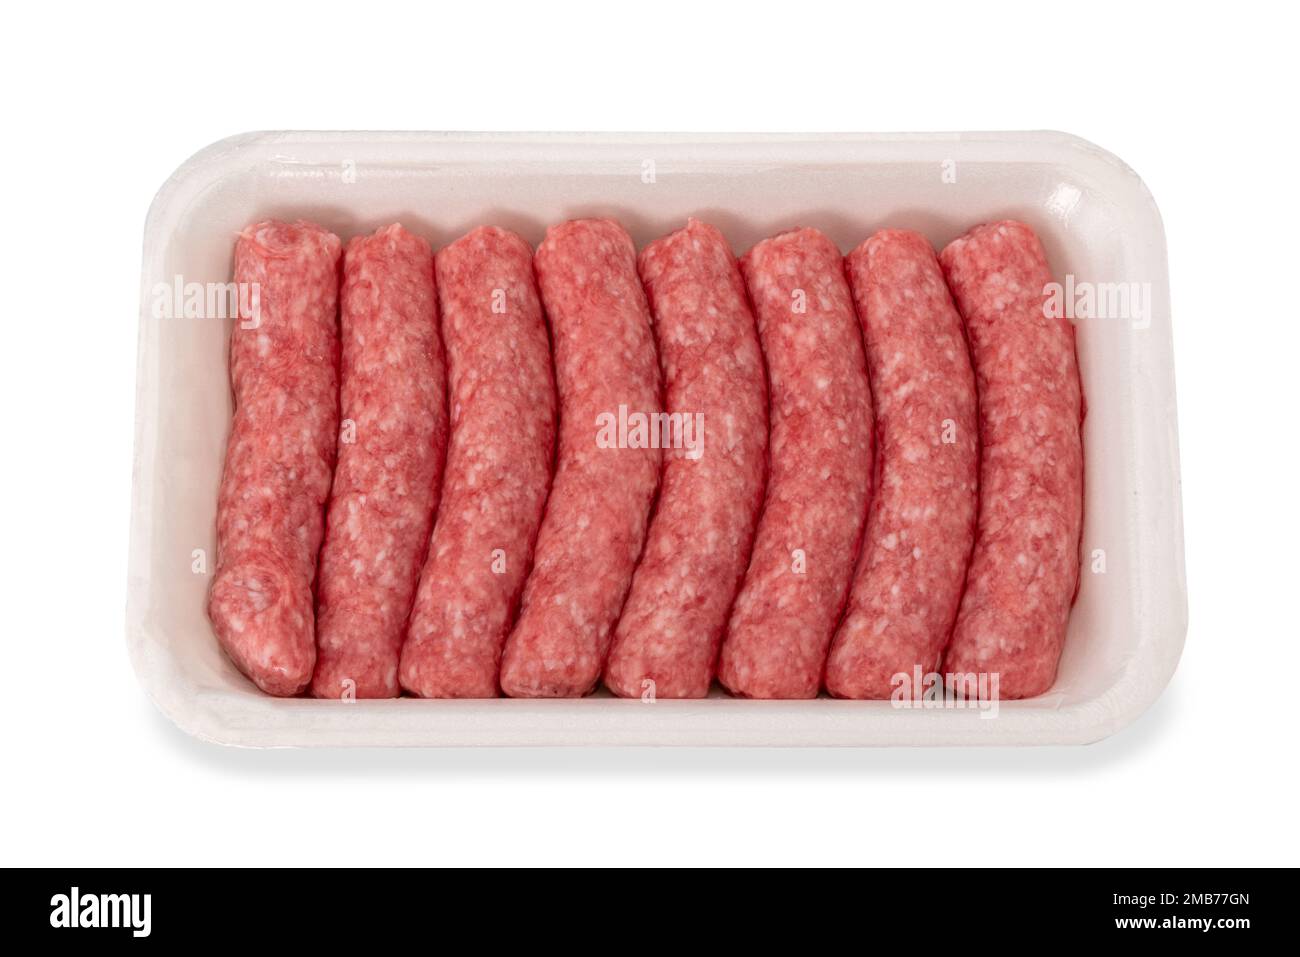 tacchino crudo e salsiccia di carne di maiale in vassoio di plastica alimentare in vendita al supermercato, isolato su bianco con percorso di ritaglio incluso Foto Stock